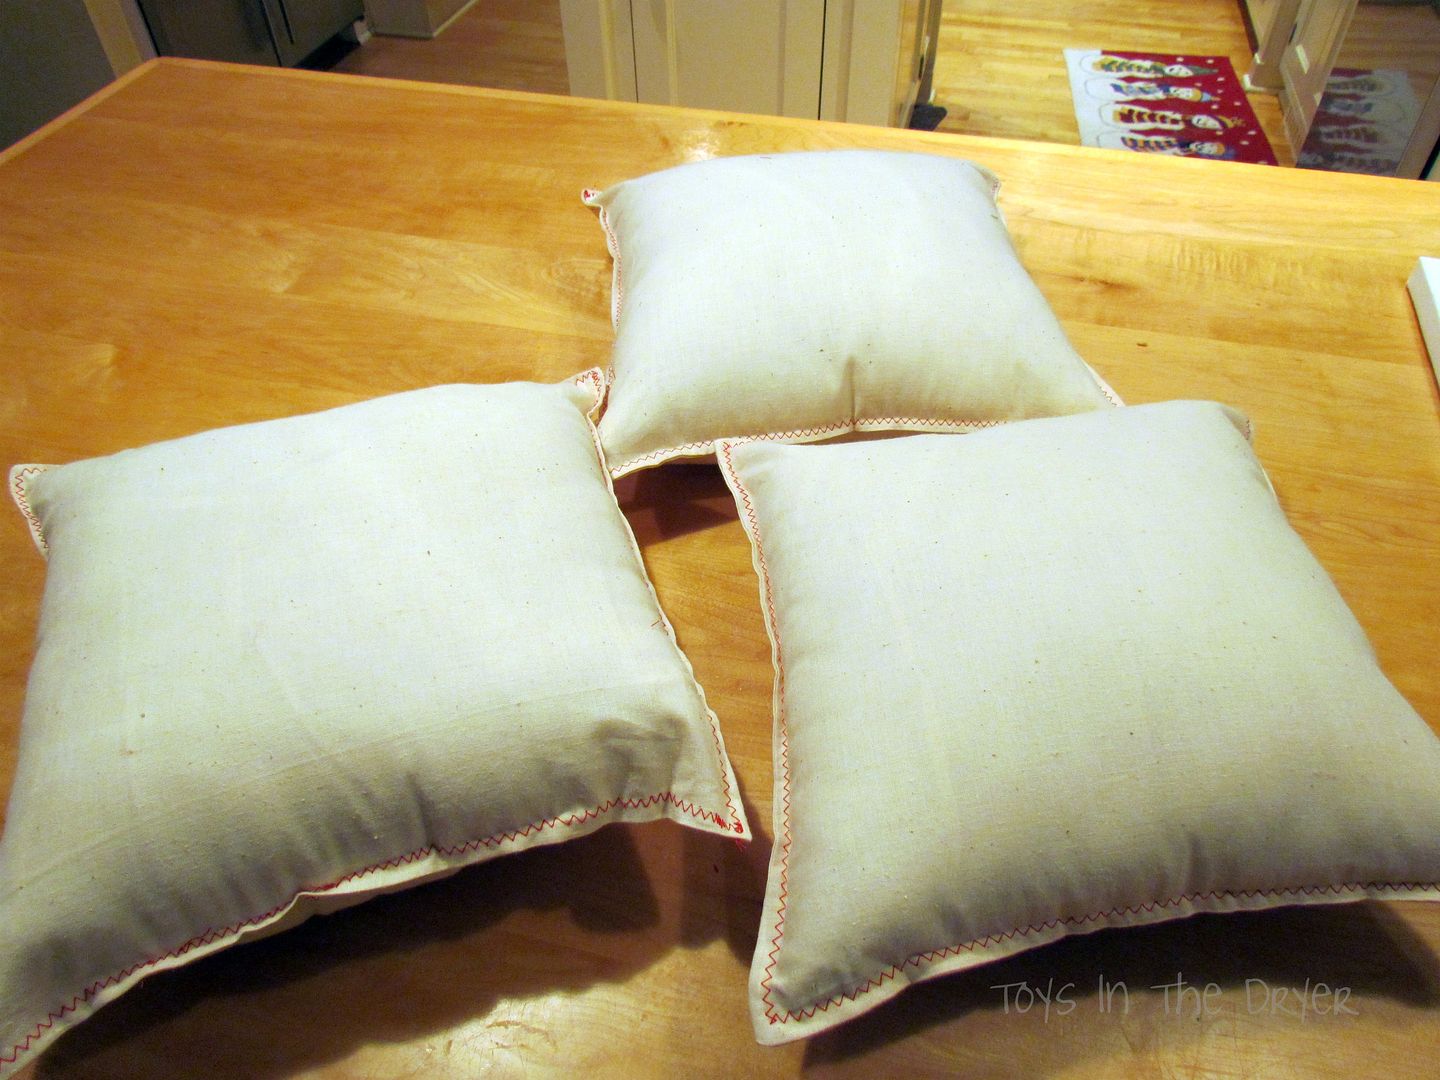 how to make Christmas pillows yourself